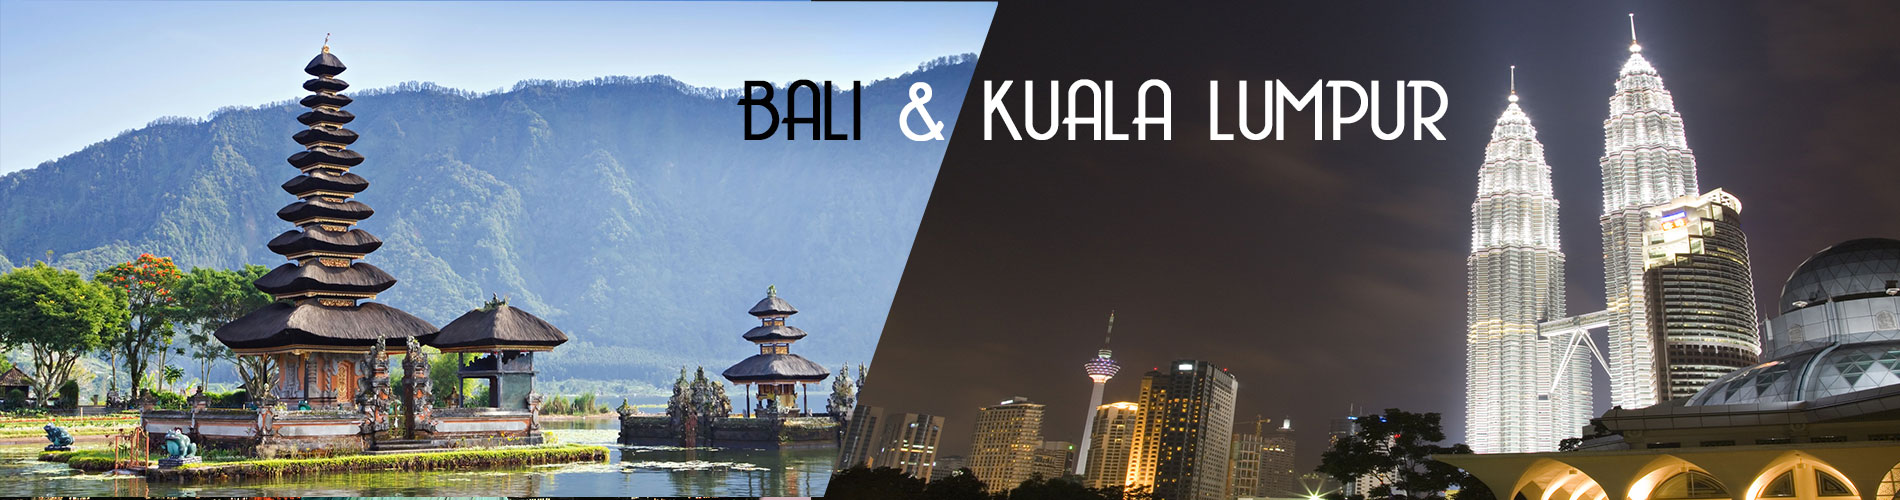 Bali&Kuala Lumpur 